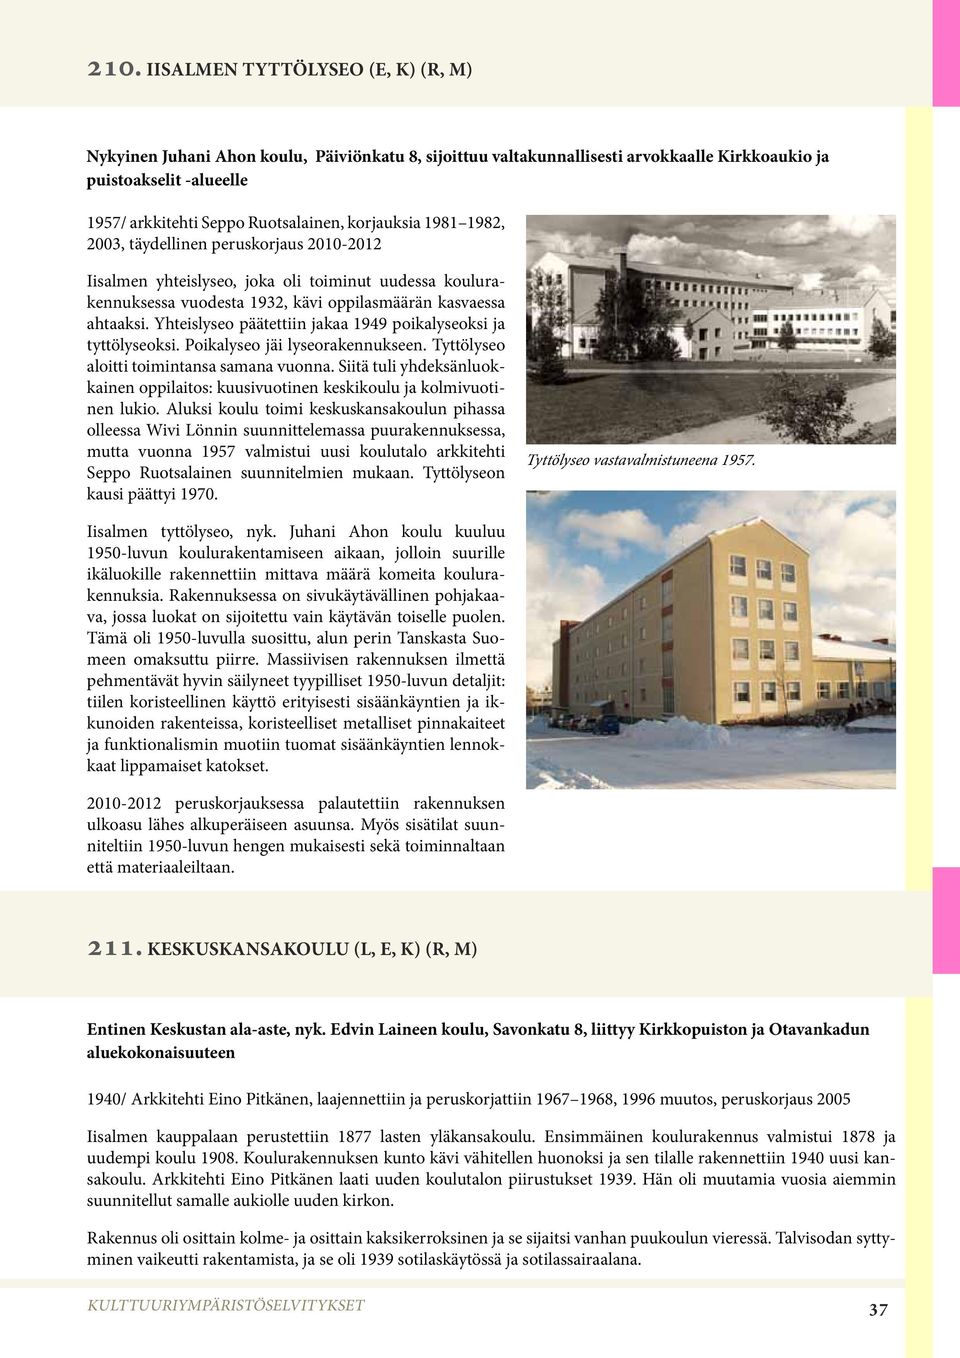 Yhteislyseo päätettiin jakaa 1949 poikalyseoksi ja tyttölyseoksi. Poikalyseo jäi lyseorakennukseen. Tyttölyseo aloitti toimintansa samana vuonna.